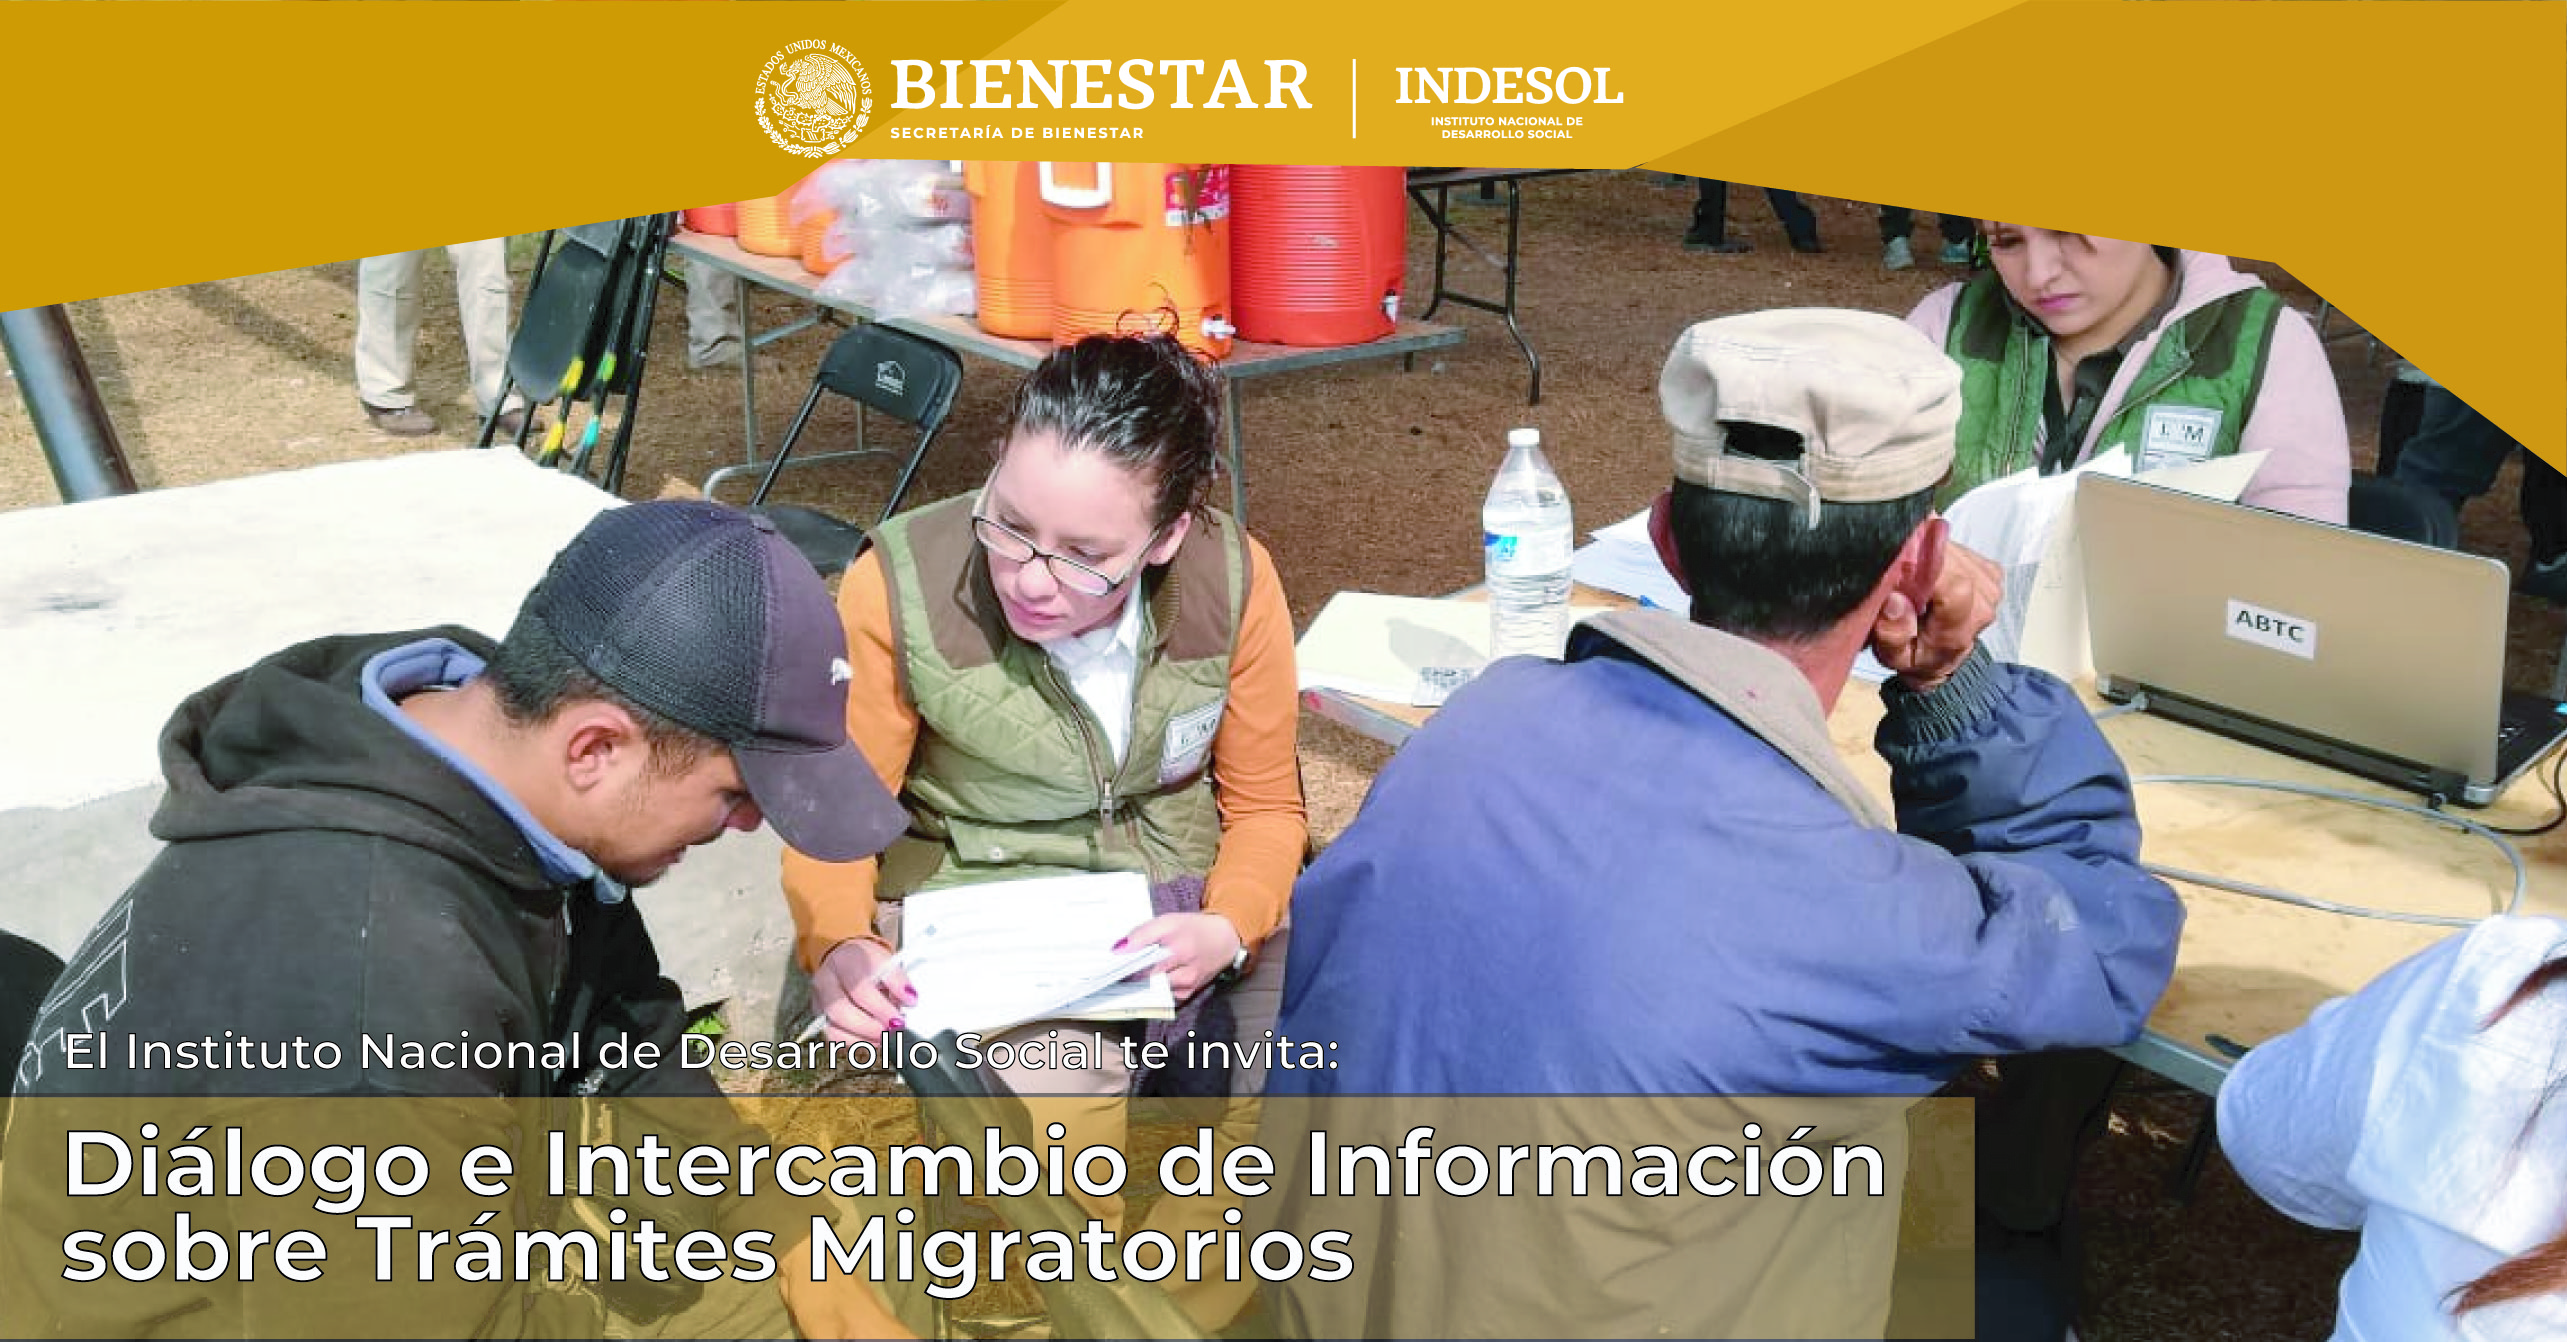 Invitación al Diálogo e Intercambio de Información sobre Trámites Migratorios